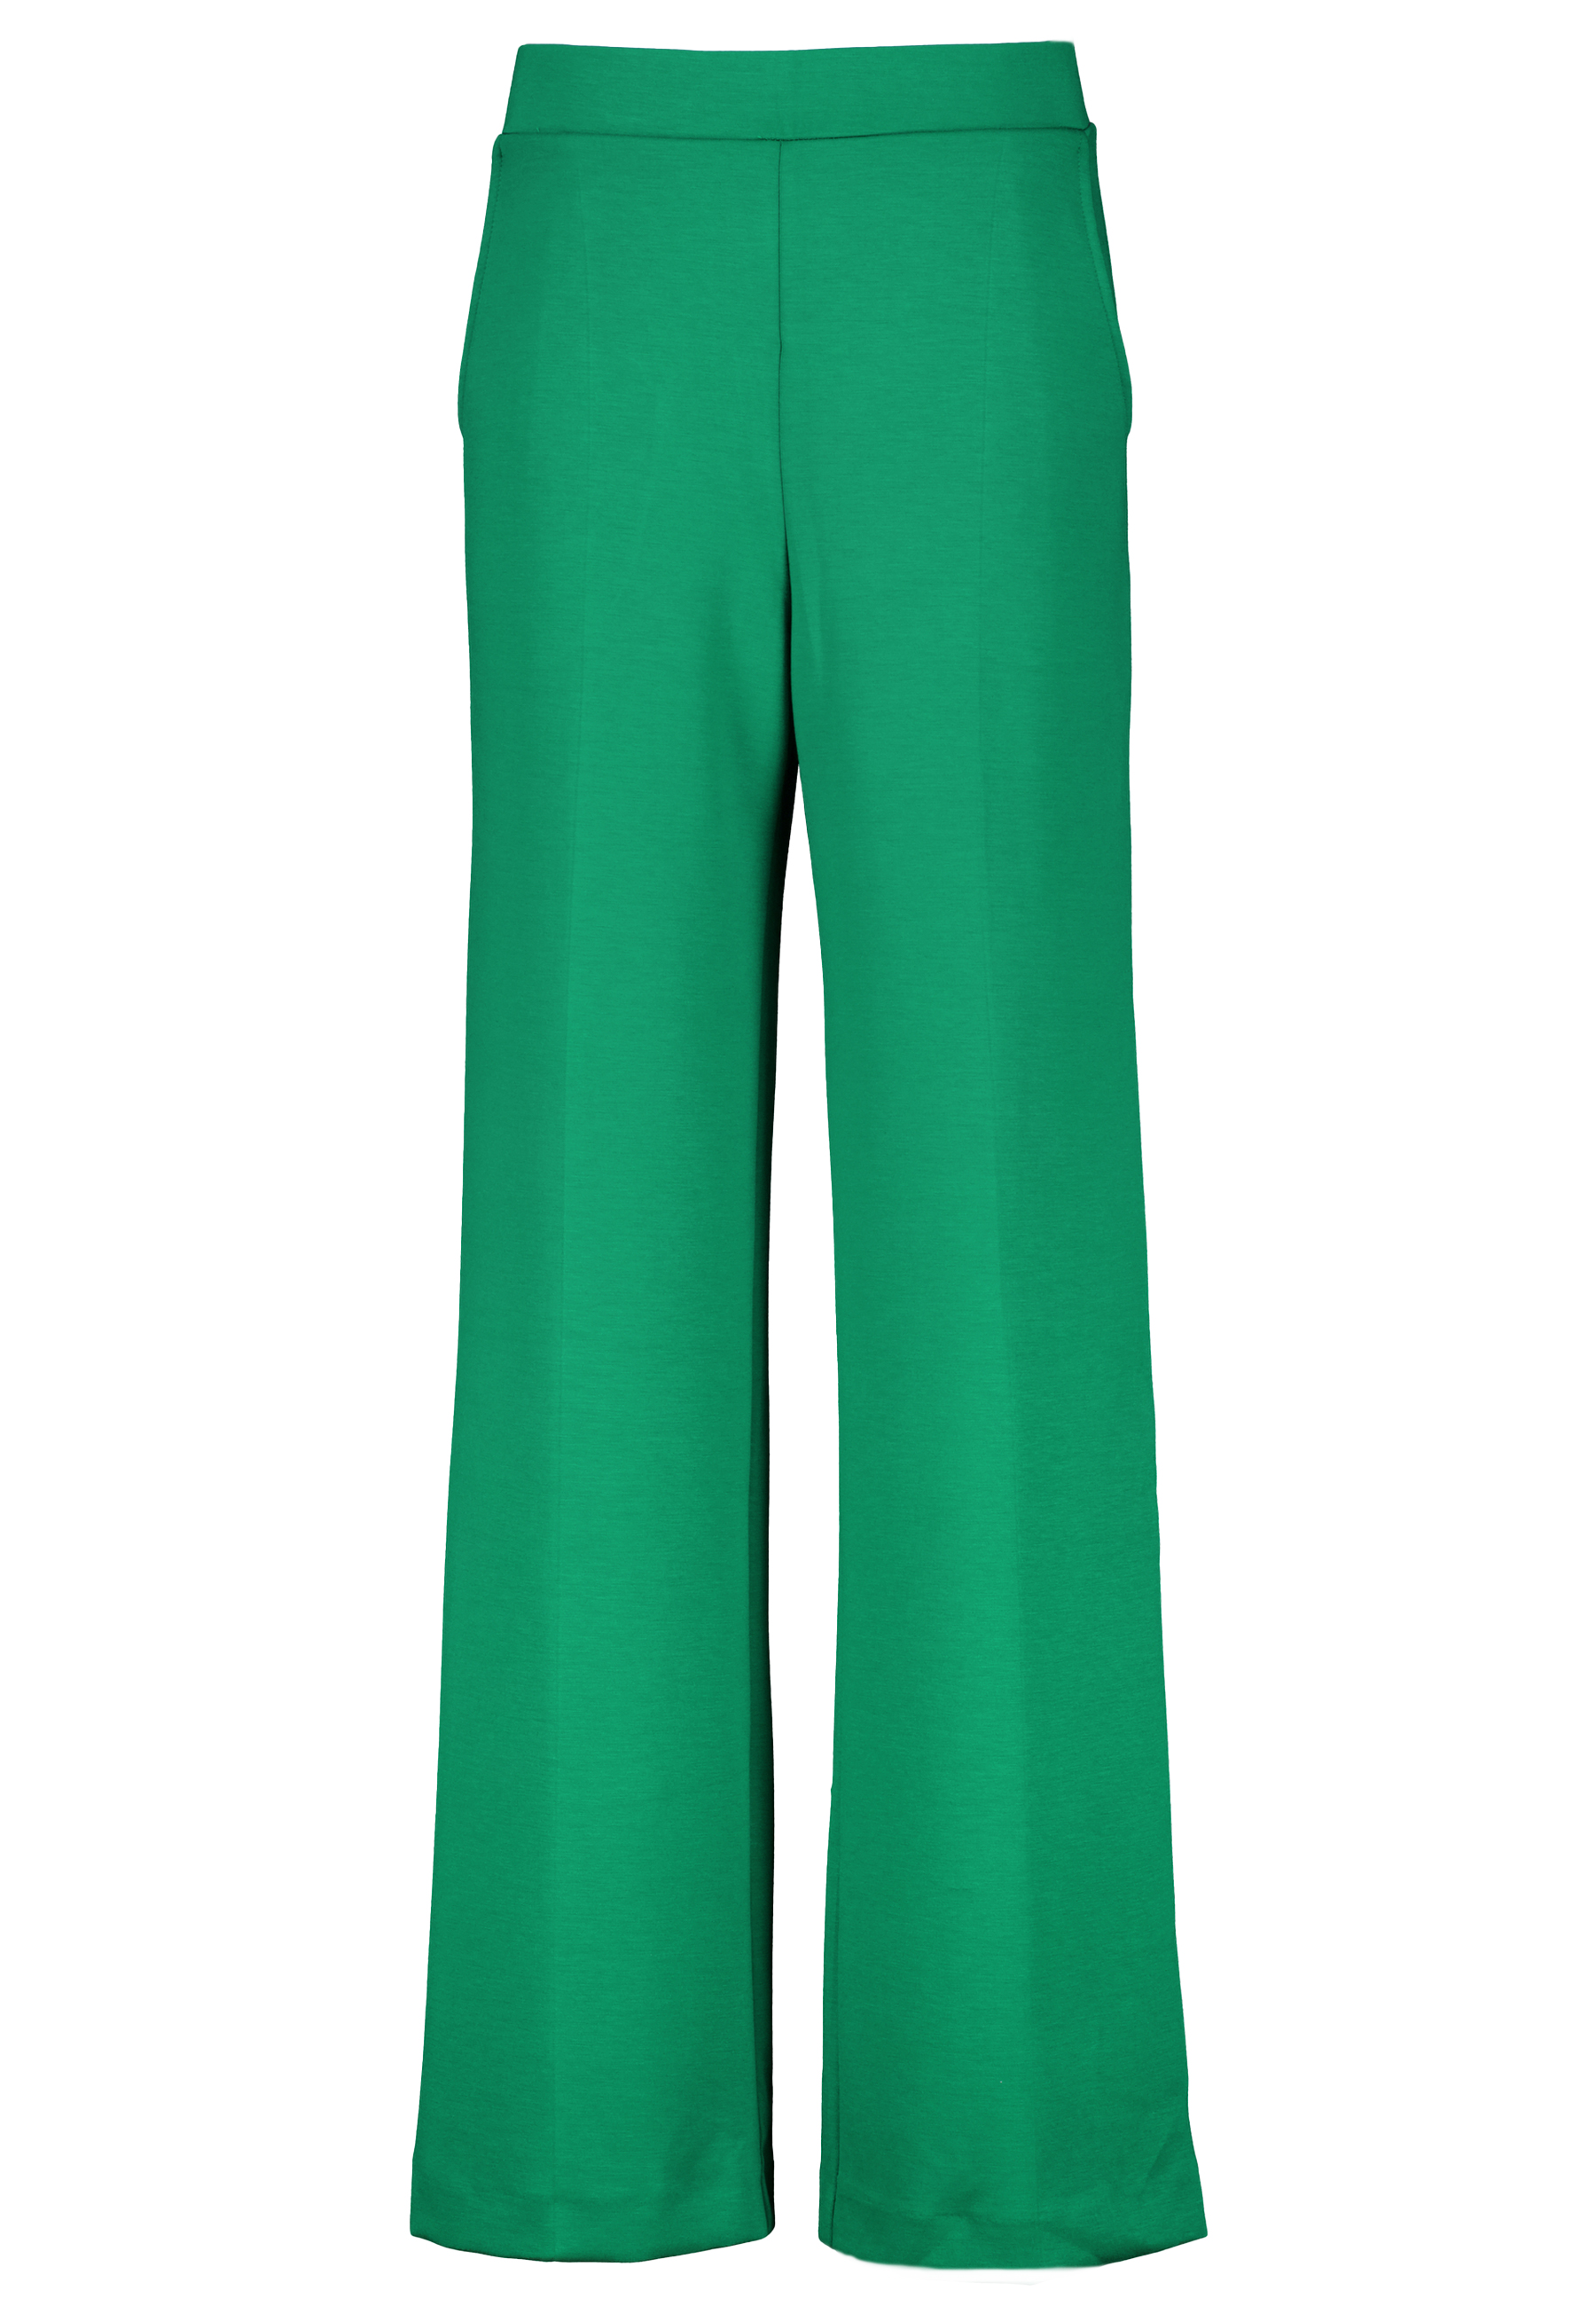 Ana Alcazar pantalons groen Dames maat 40